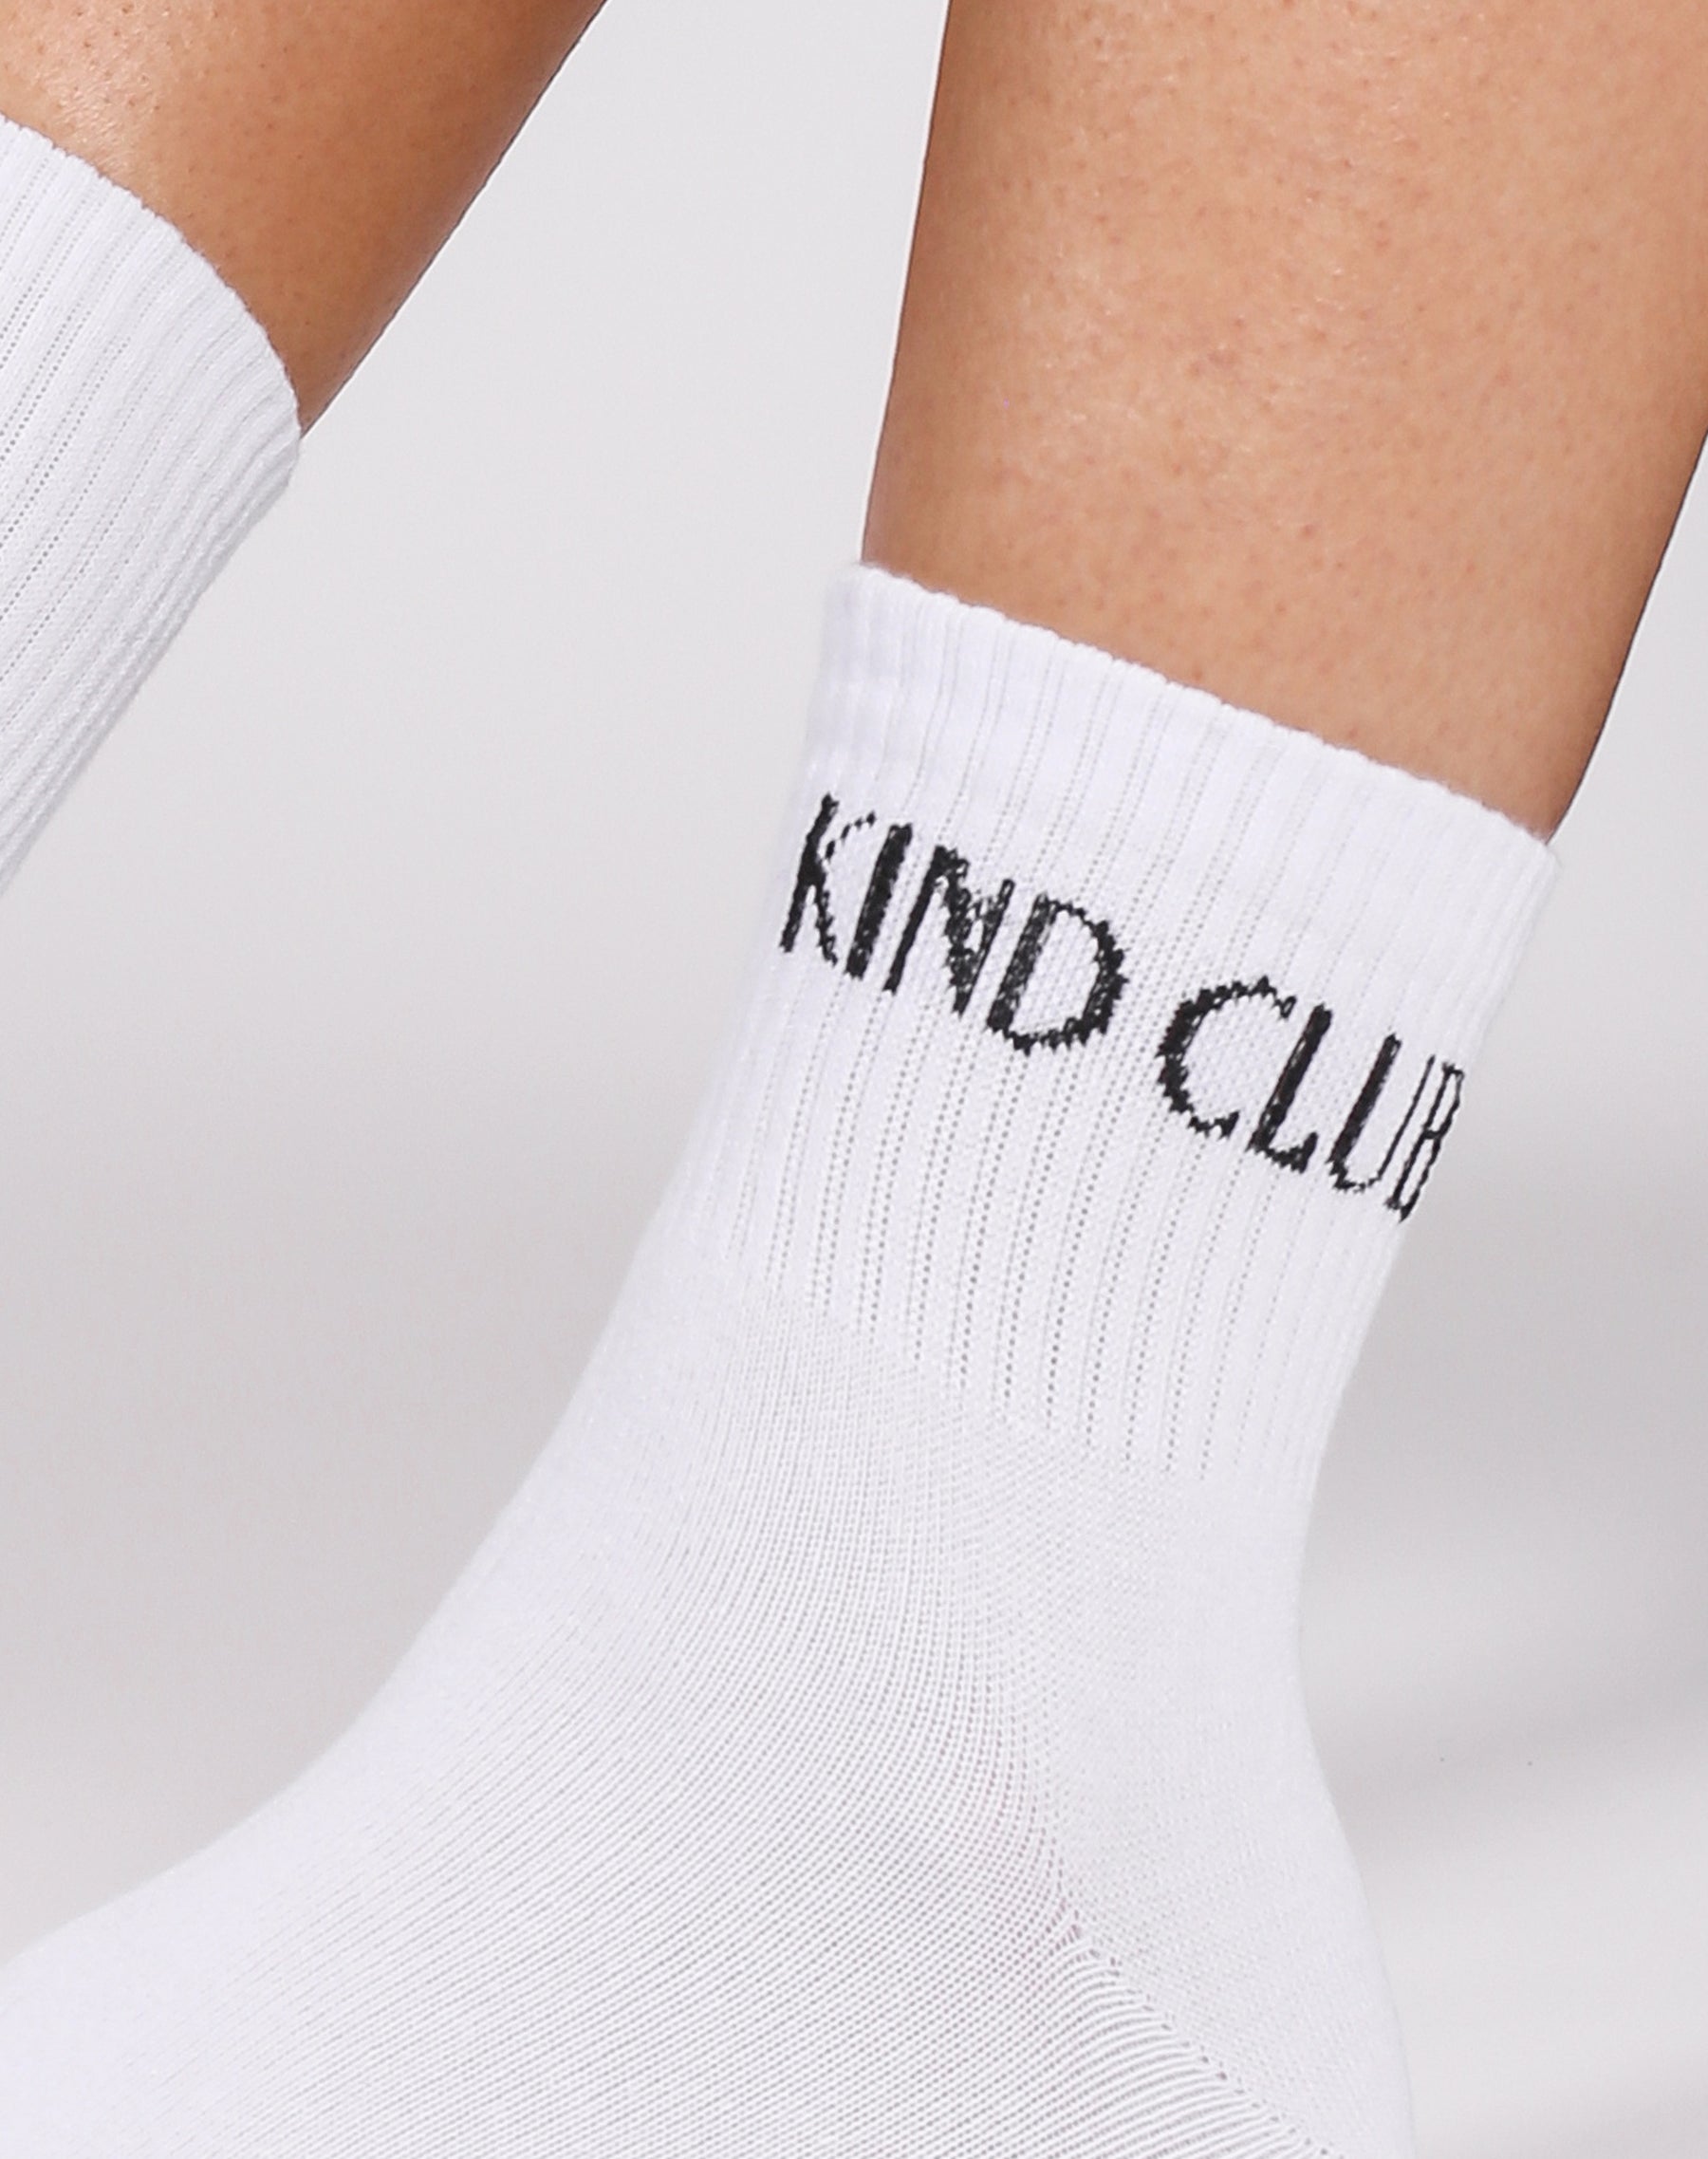 'Kind Club' Sock | White